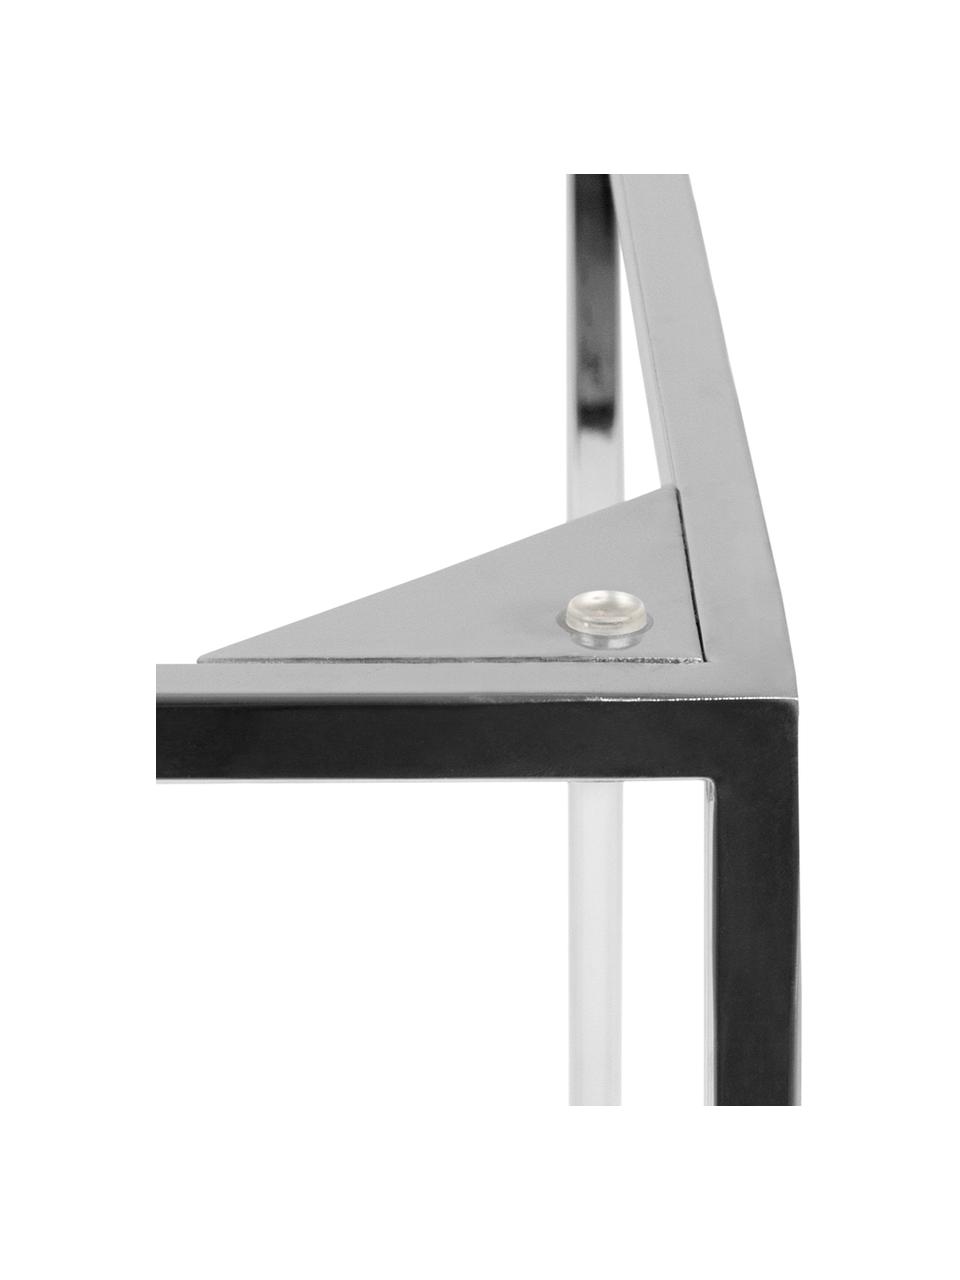 Marmor-Beistelltisch Gleam, Tischplatte: Marmor, Gestell: Stahl, verchromt, Tischplatte: Weiß, marmoriert<br>Gestell: Chrom, 50 x 45 cm